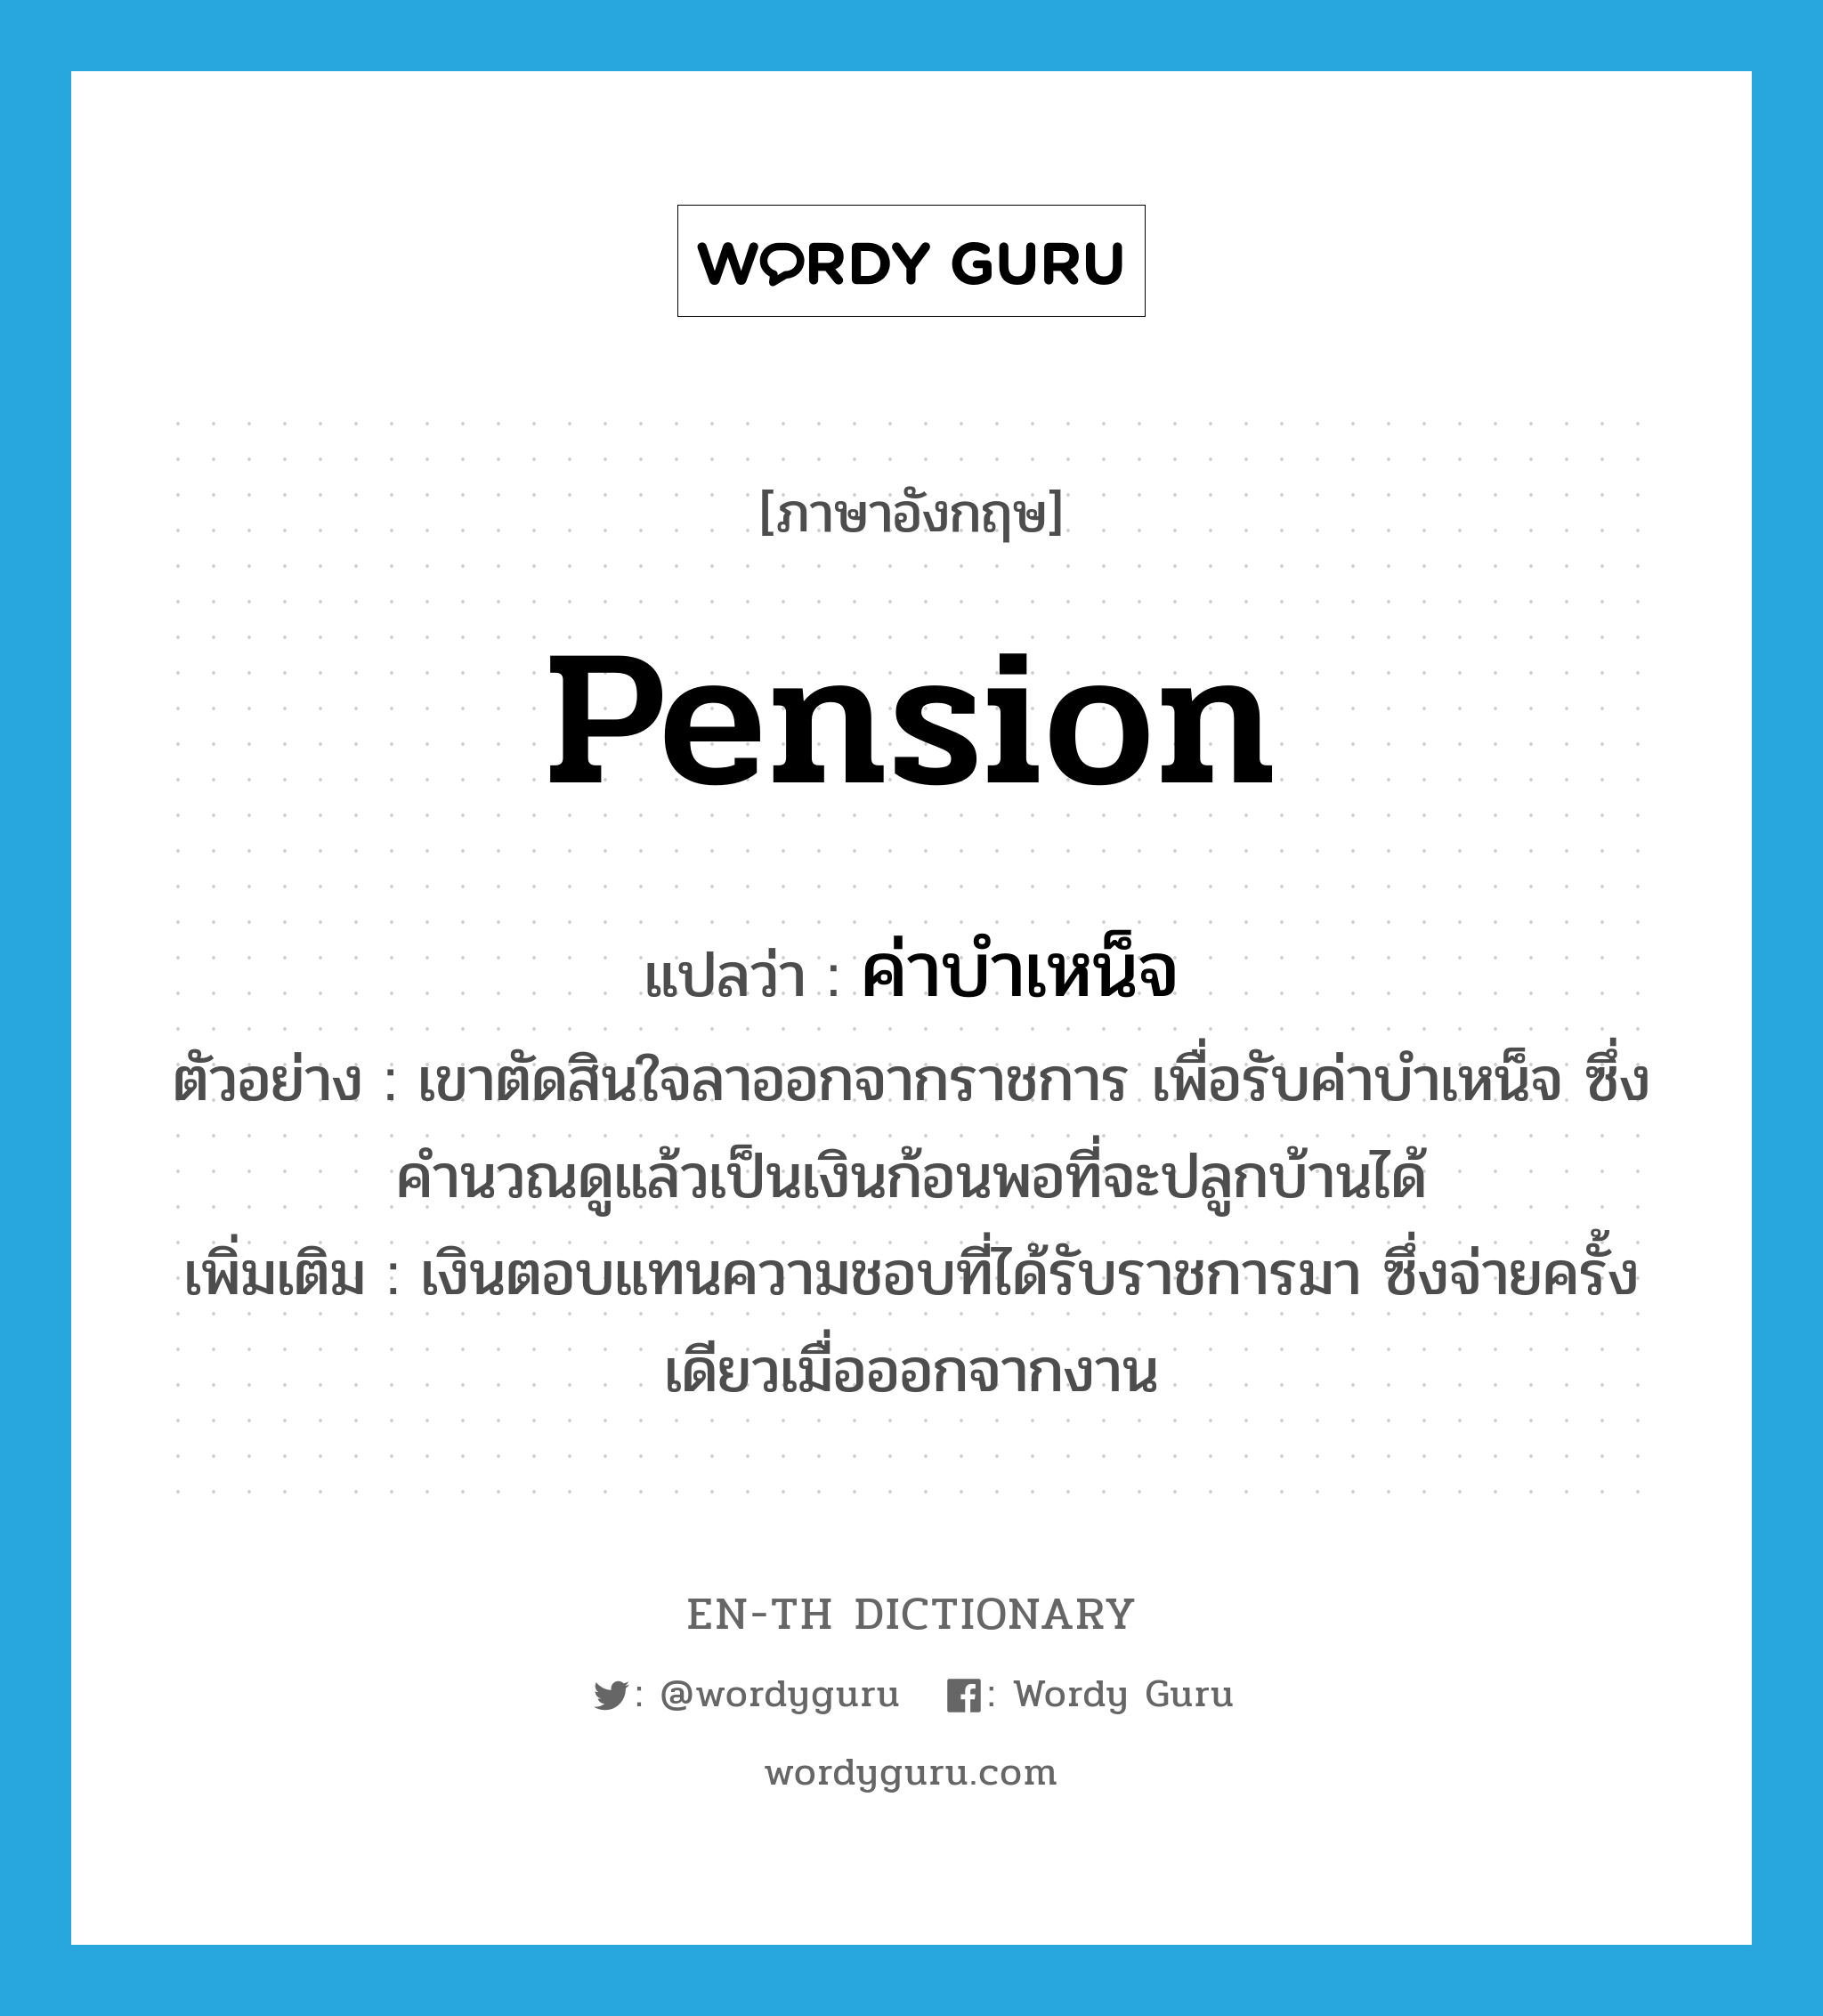 pension แปลว่า?, คำศัพท์ภาษาอังกฤษ pension แปลว่า ค่าบำเหน็จ ประเภท N ตัวอย่าง เขาตัดสินใจลาออกจากราชการ เพื่อรับค่าบำเหน็จ ซึ่งคำนวณดูแล้วเป็นเงินก้อนพอที่จะปลูกบ้านได้ เพิ่มเติม เงินตอบแทนความชอบที่ได้รับราชการมา ซึ่งจ่ายครั้งเดียวเมื่อออกจากงาน หมวด N